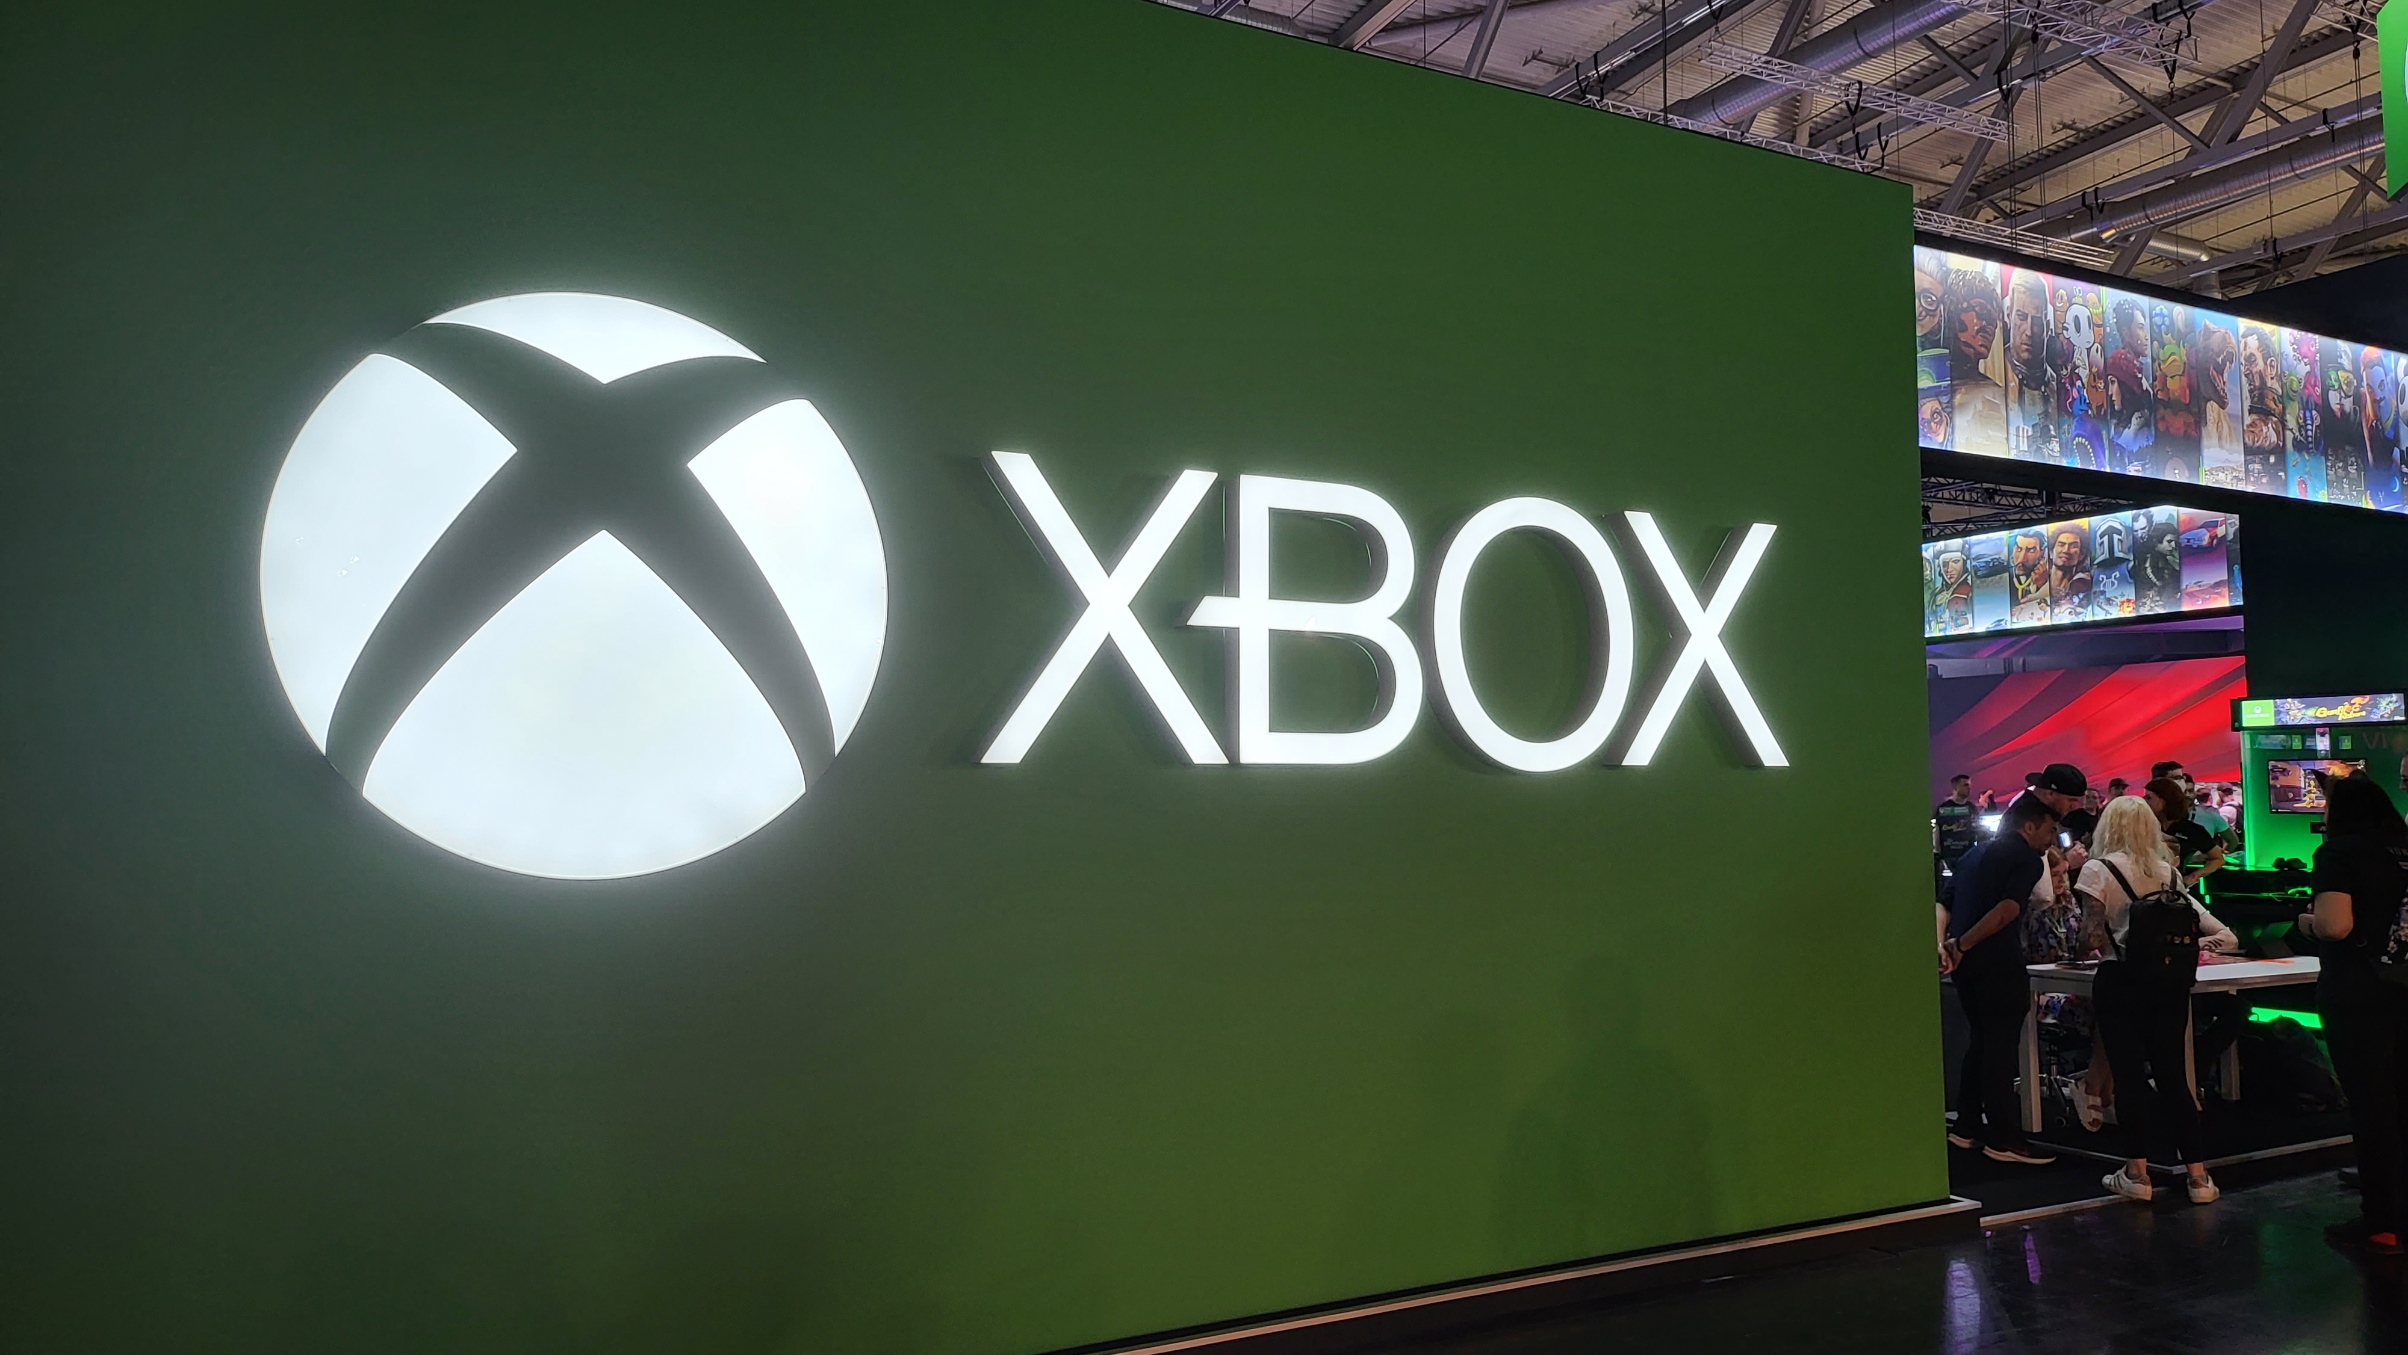 Xbox @ Gamescom 2022